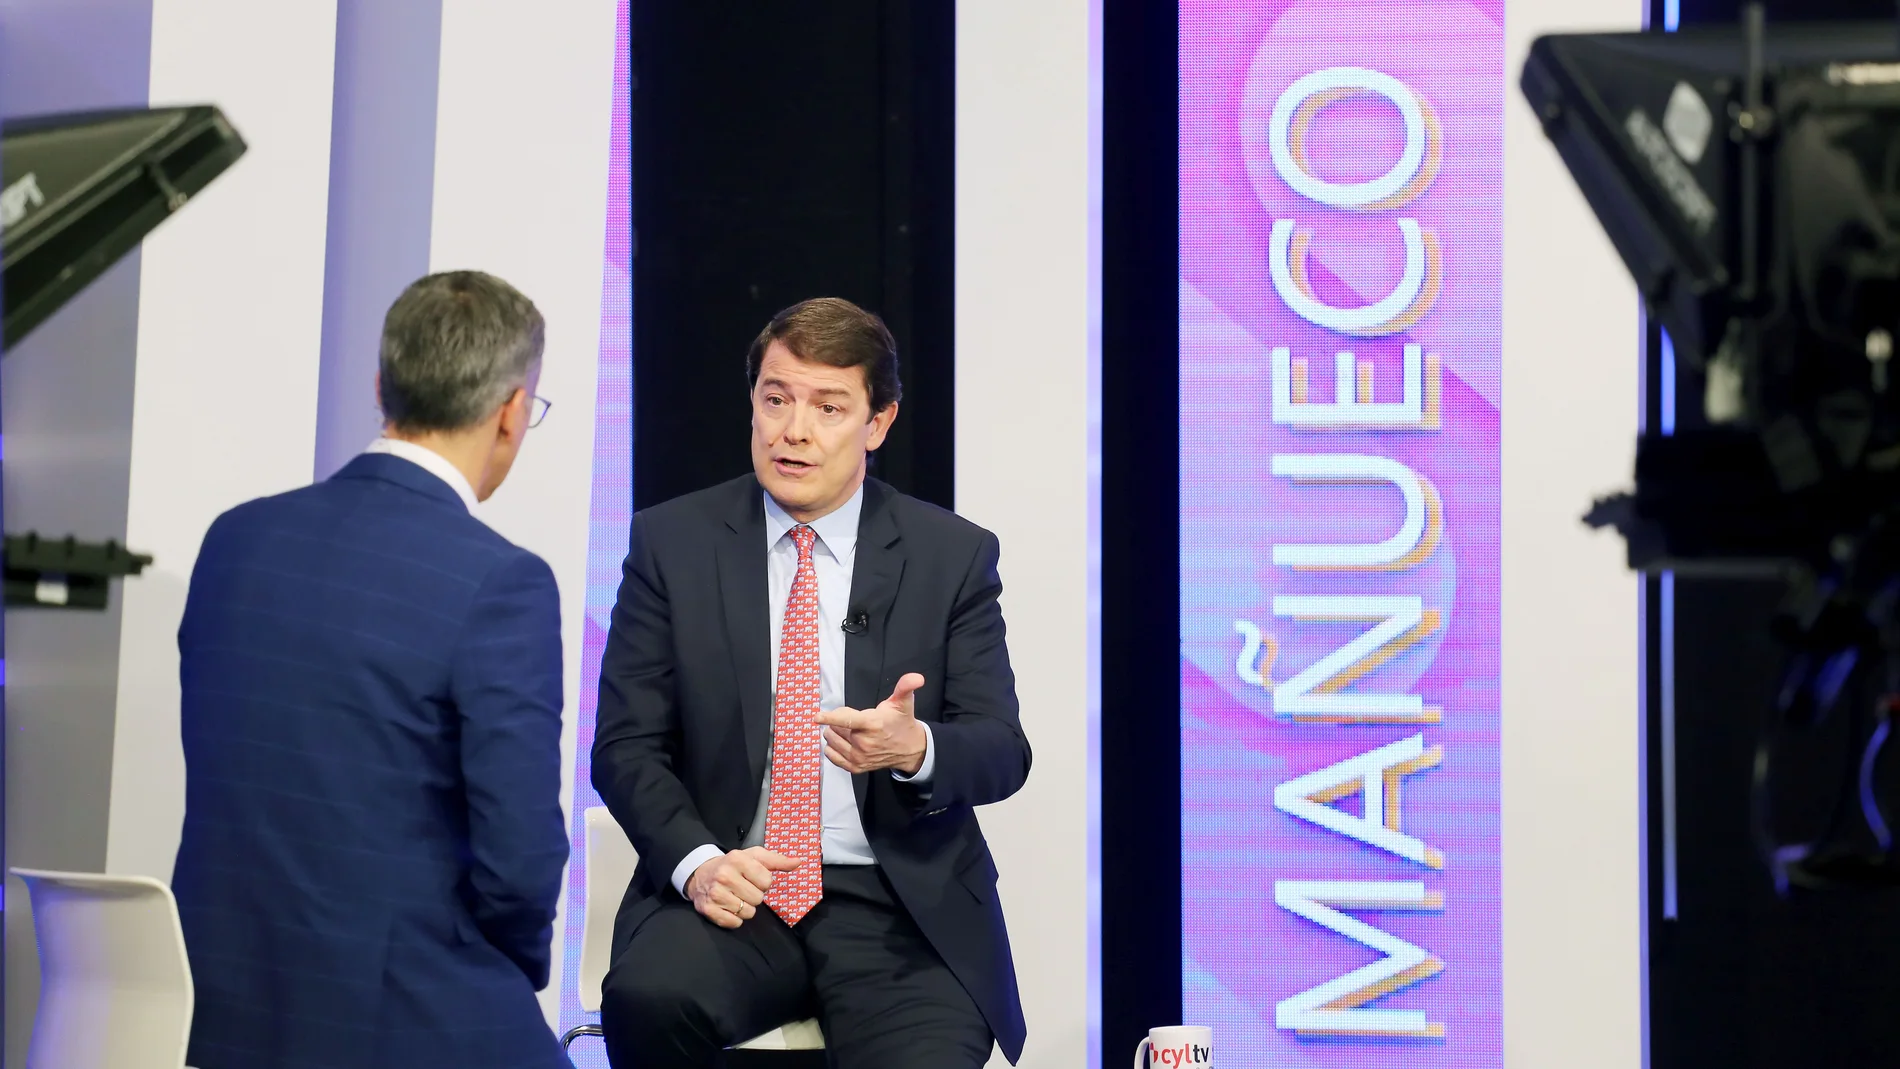 El presidente del PP y candidato a la Presidencia de la Junta, Alfonso Fernández Mañueco, participa en el programa 'Cuestión de prioridades' de RTVCyL